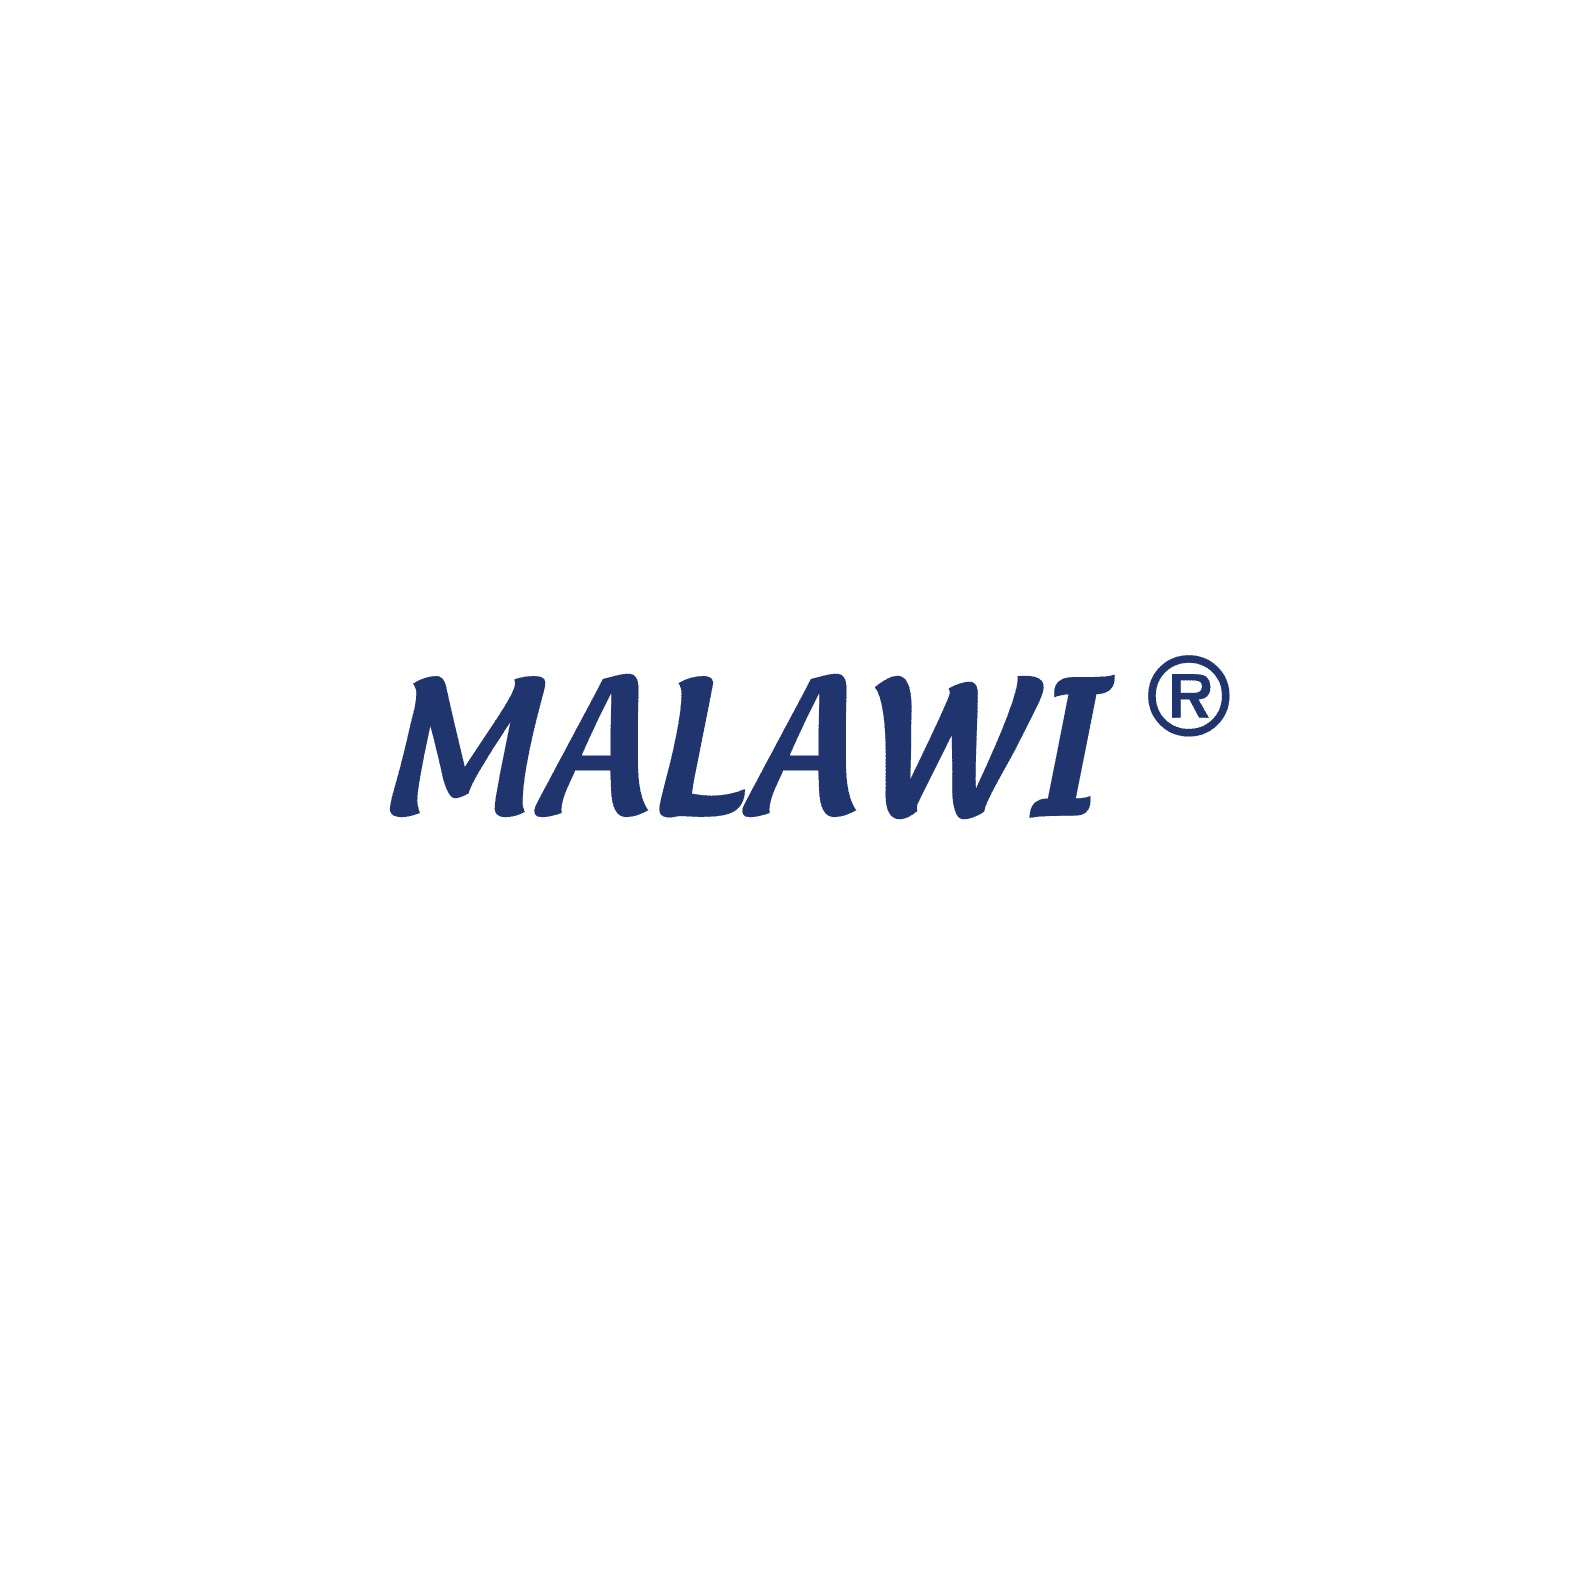 MALAWI® resmi